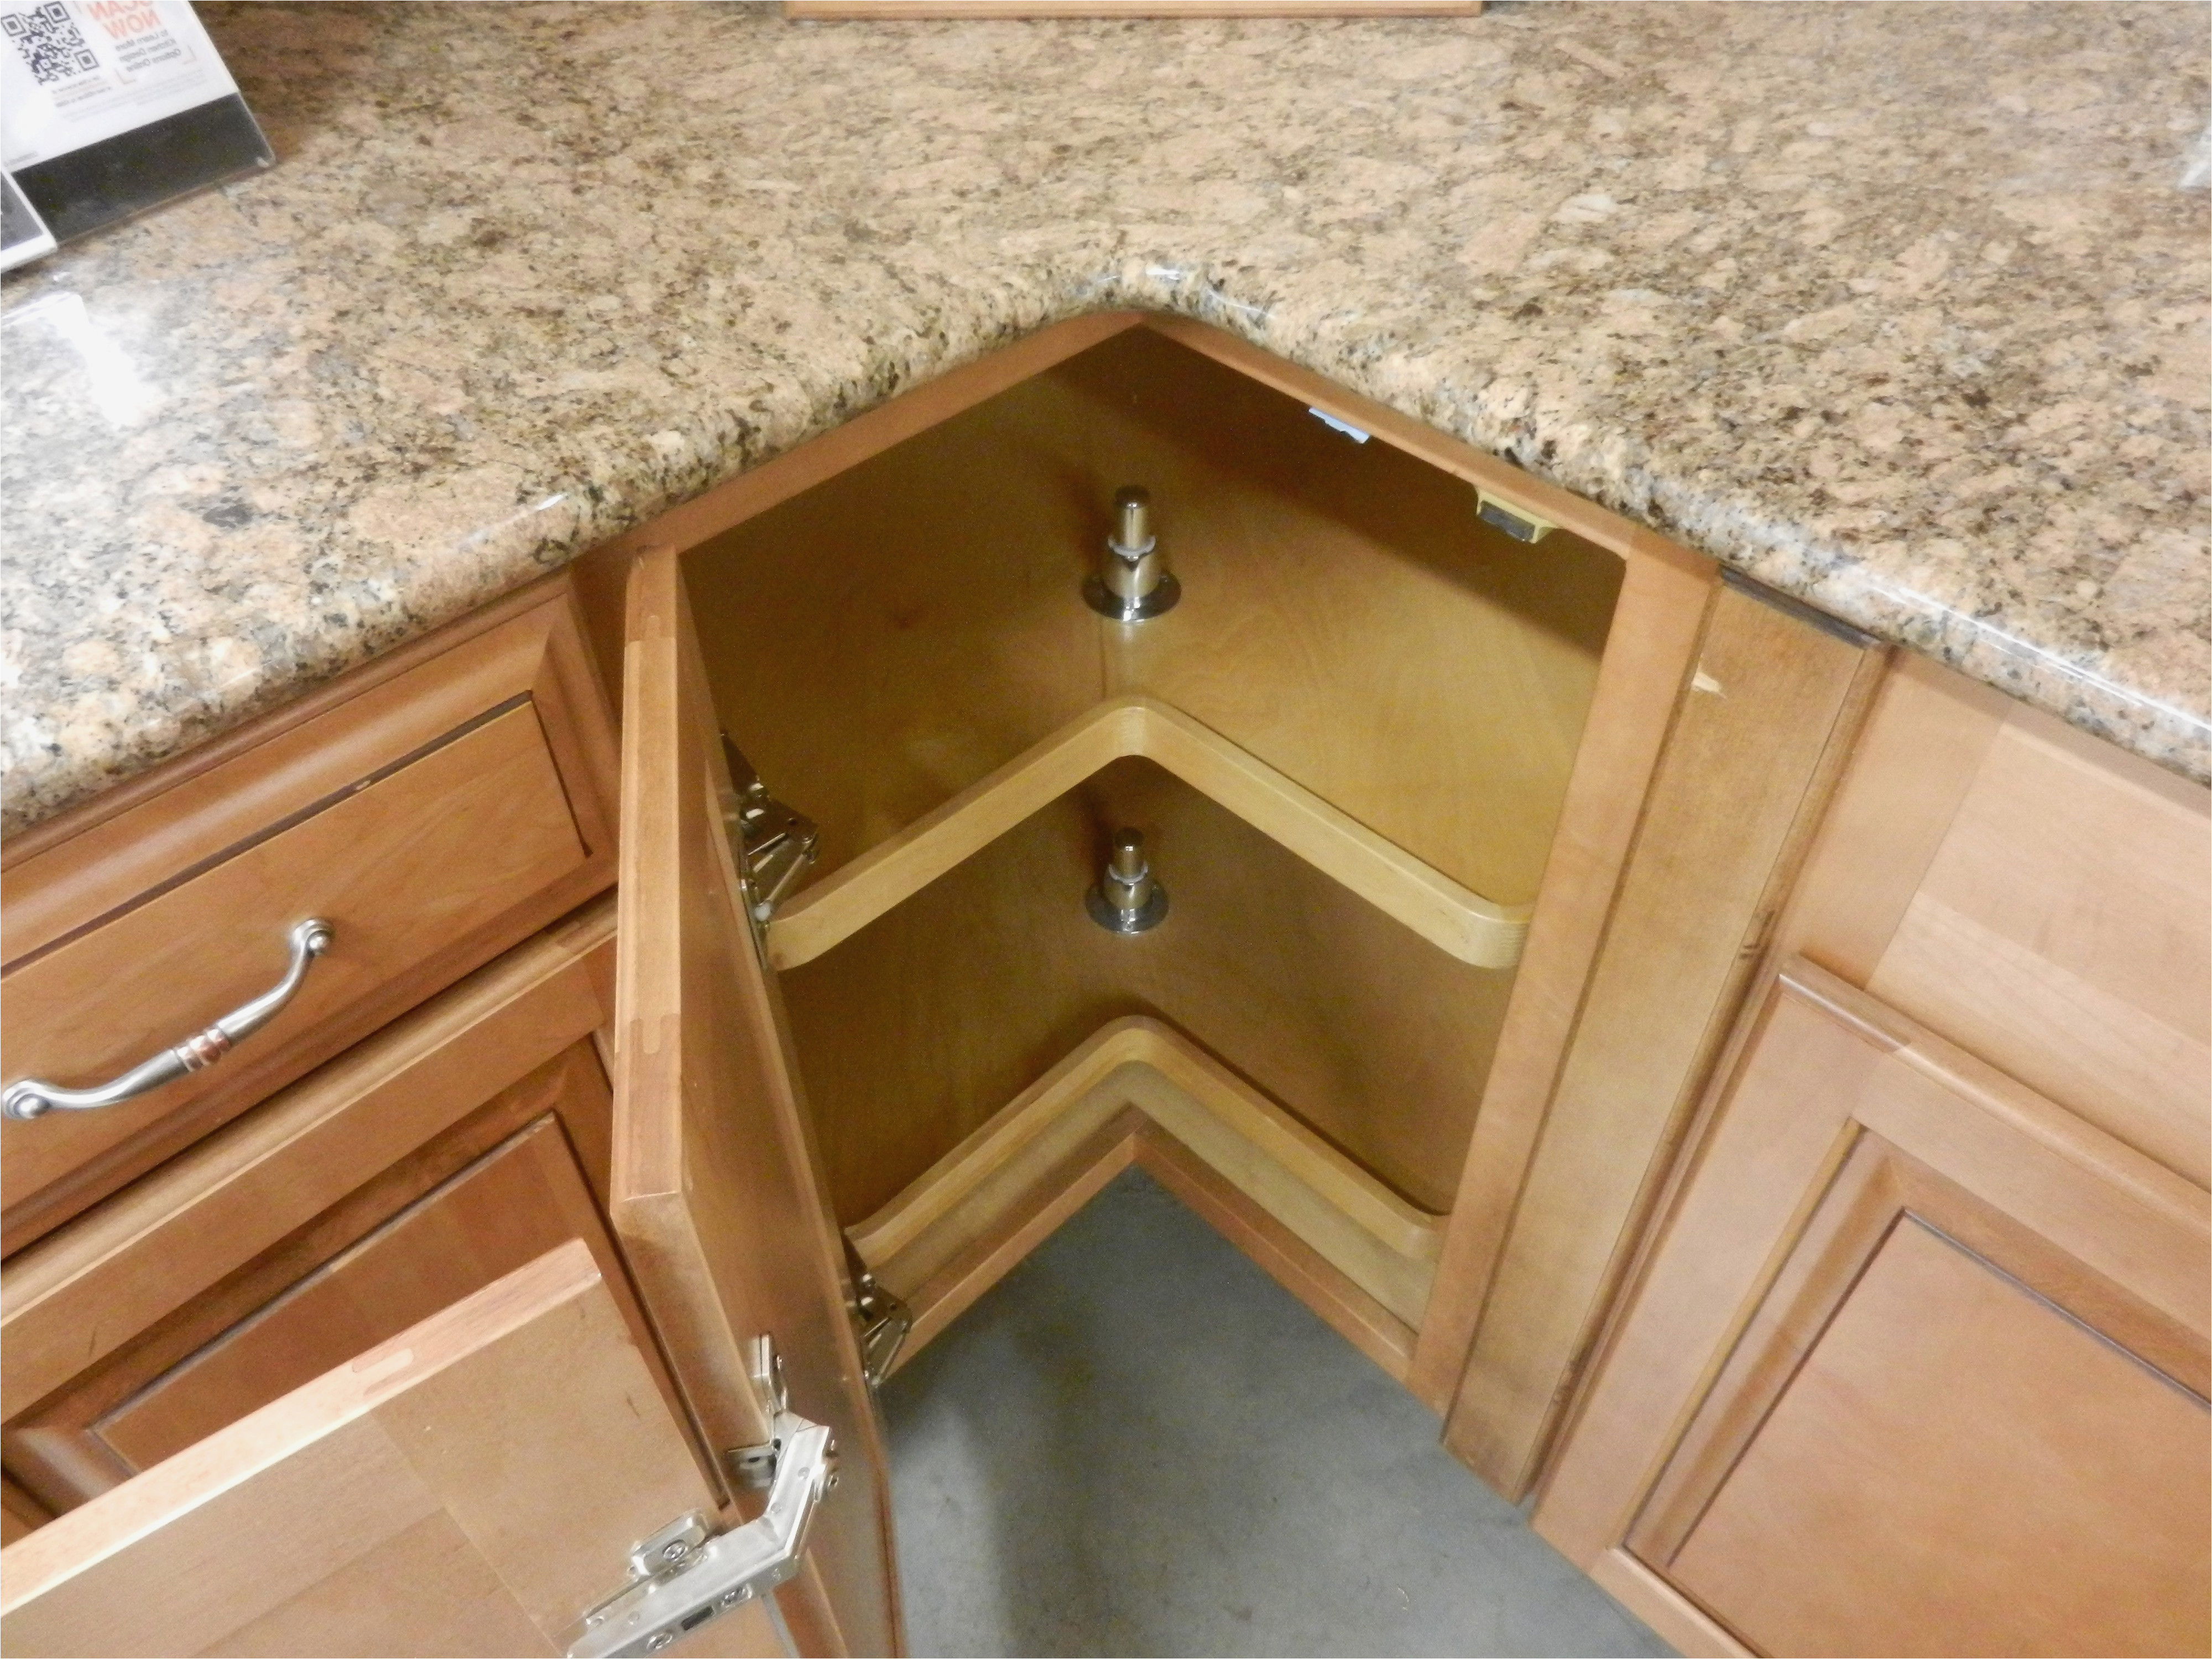 18 inch deep kitchen sink